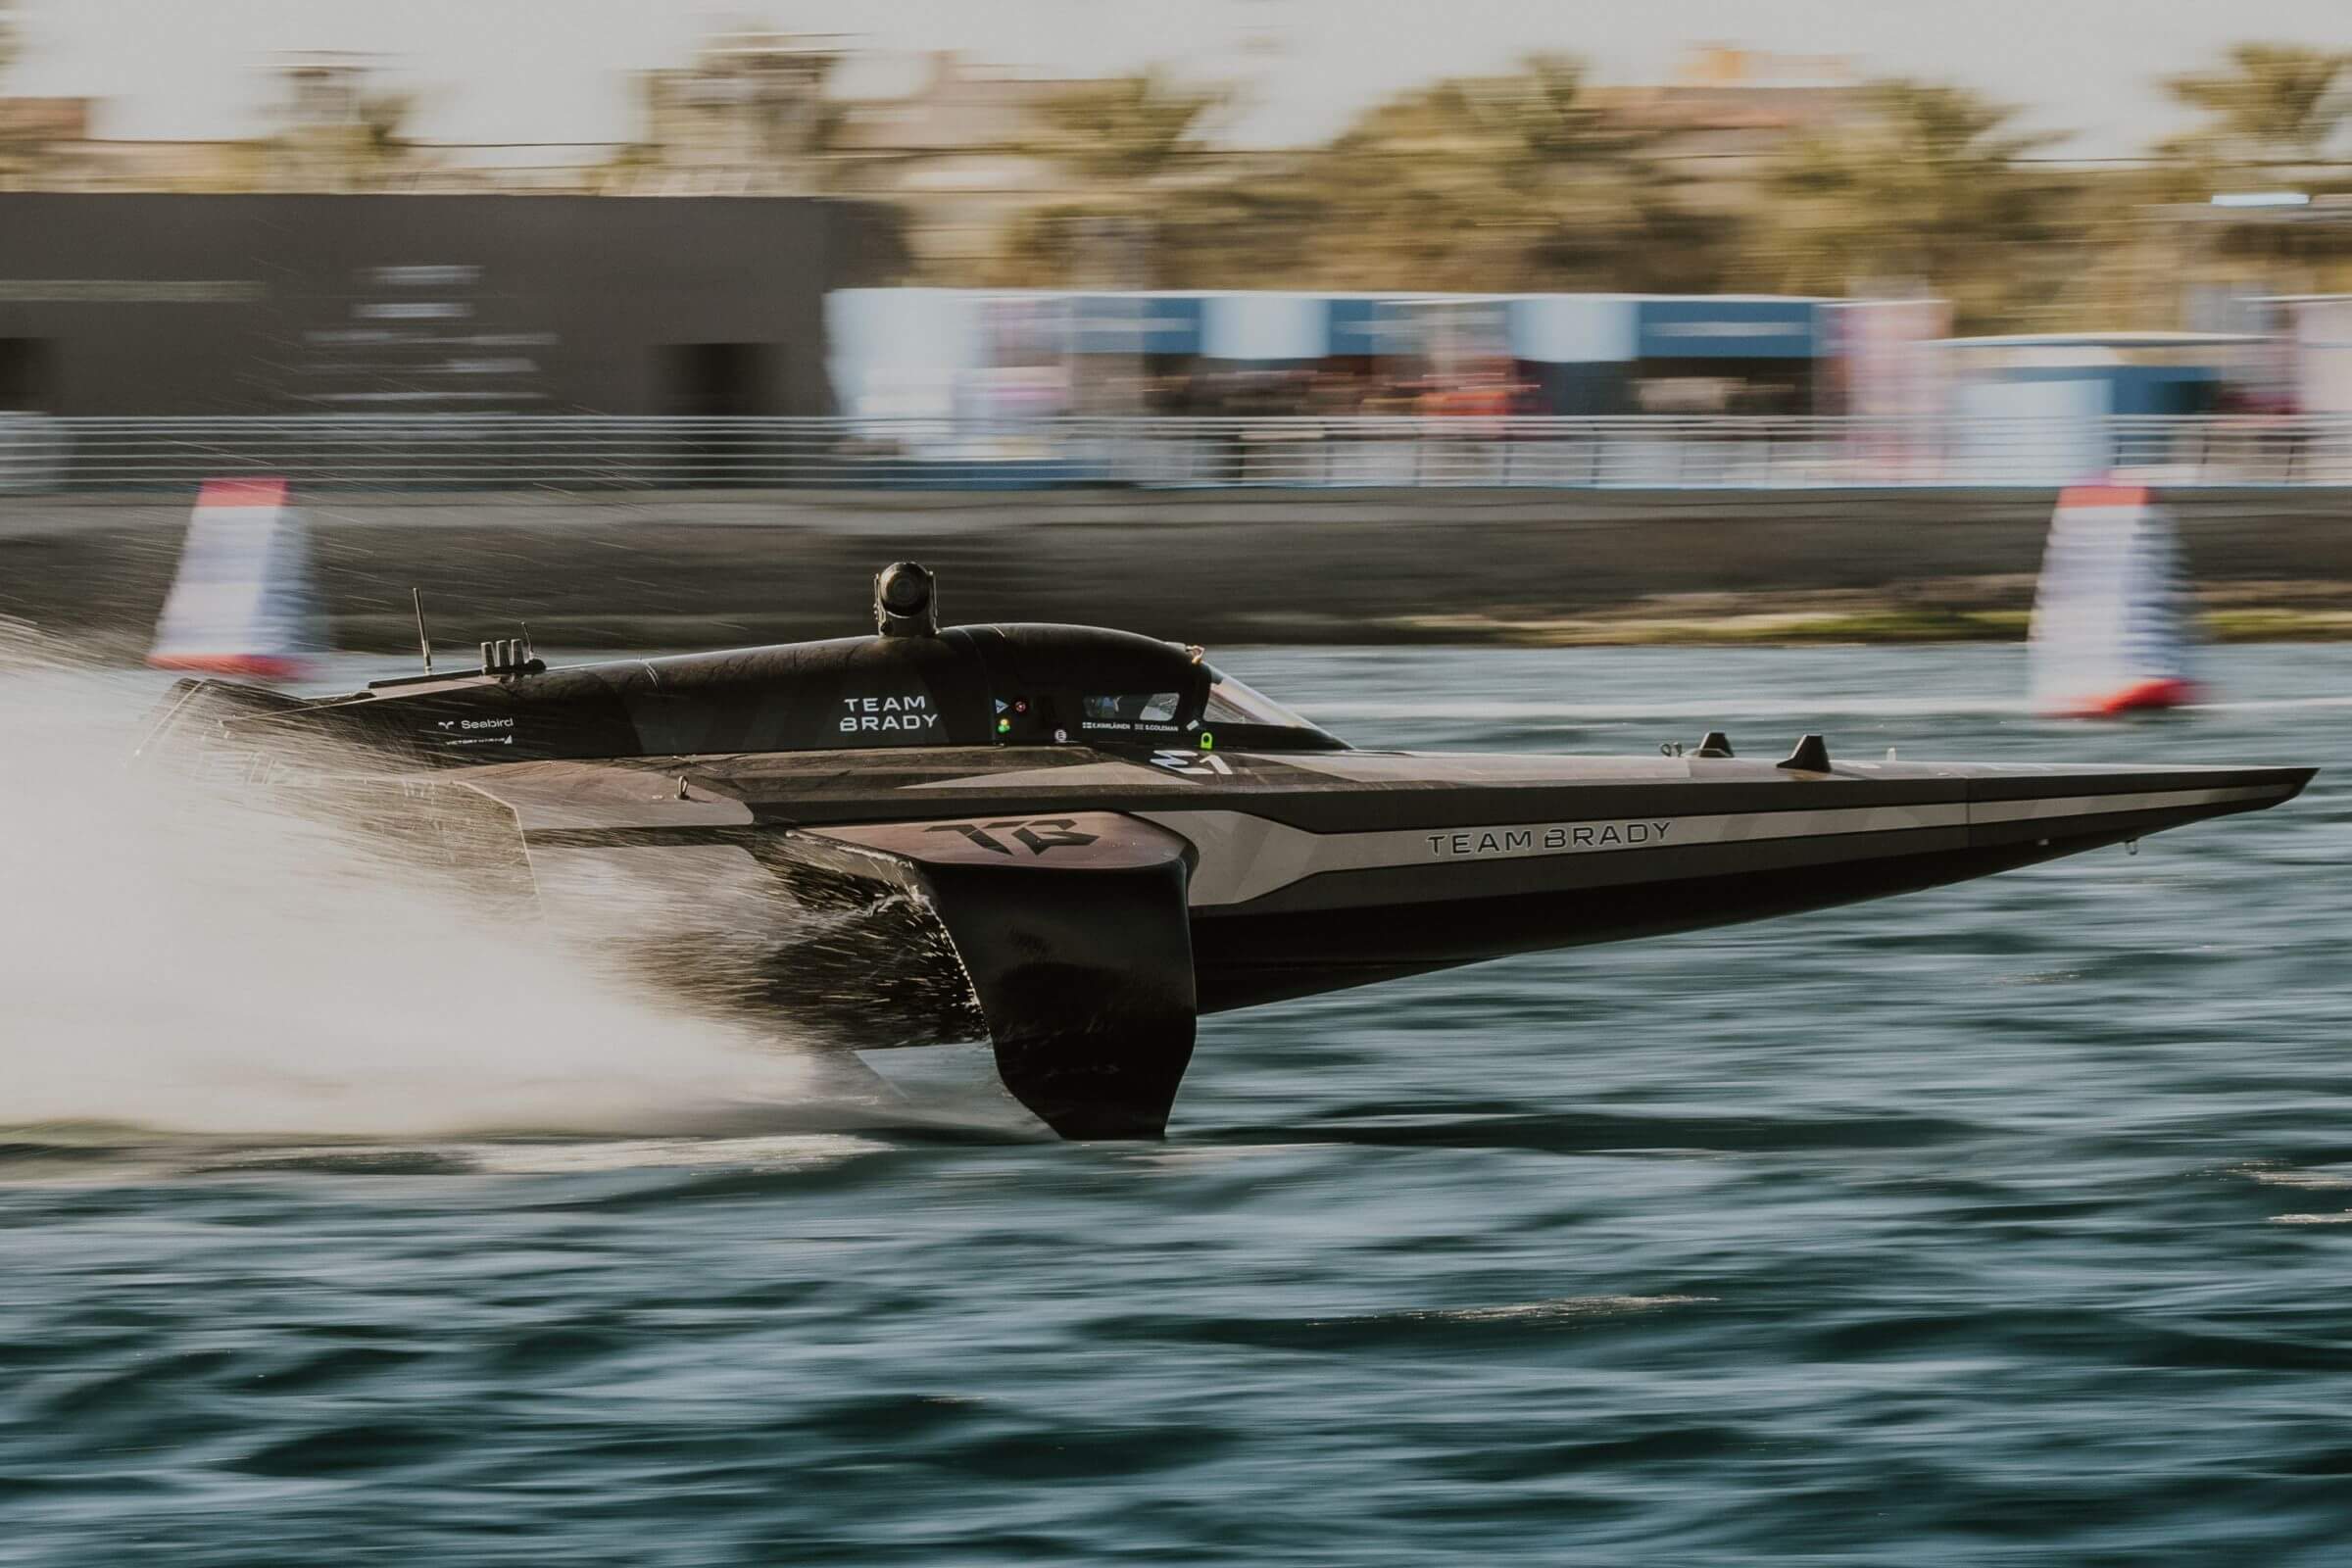 Serienstart im Video: Team von Tom Brady gewinnt Powerboat-Debüt der E1 Series in Jeddah